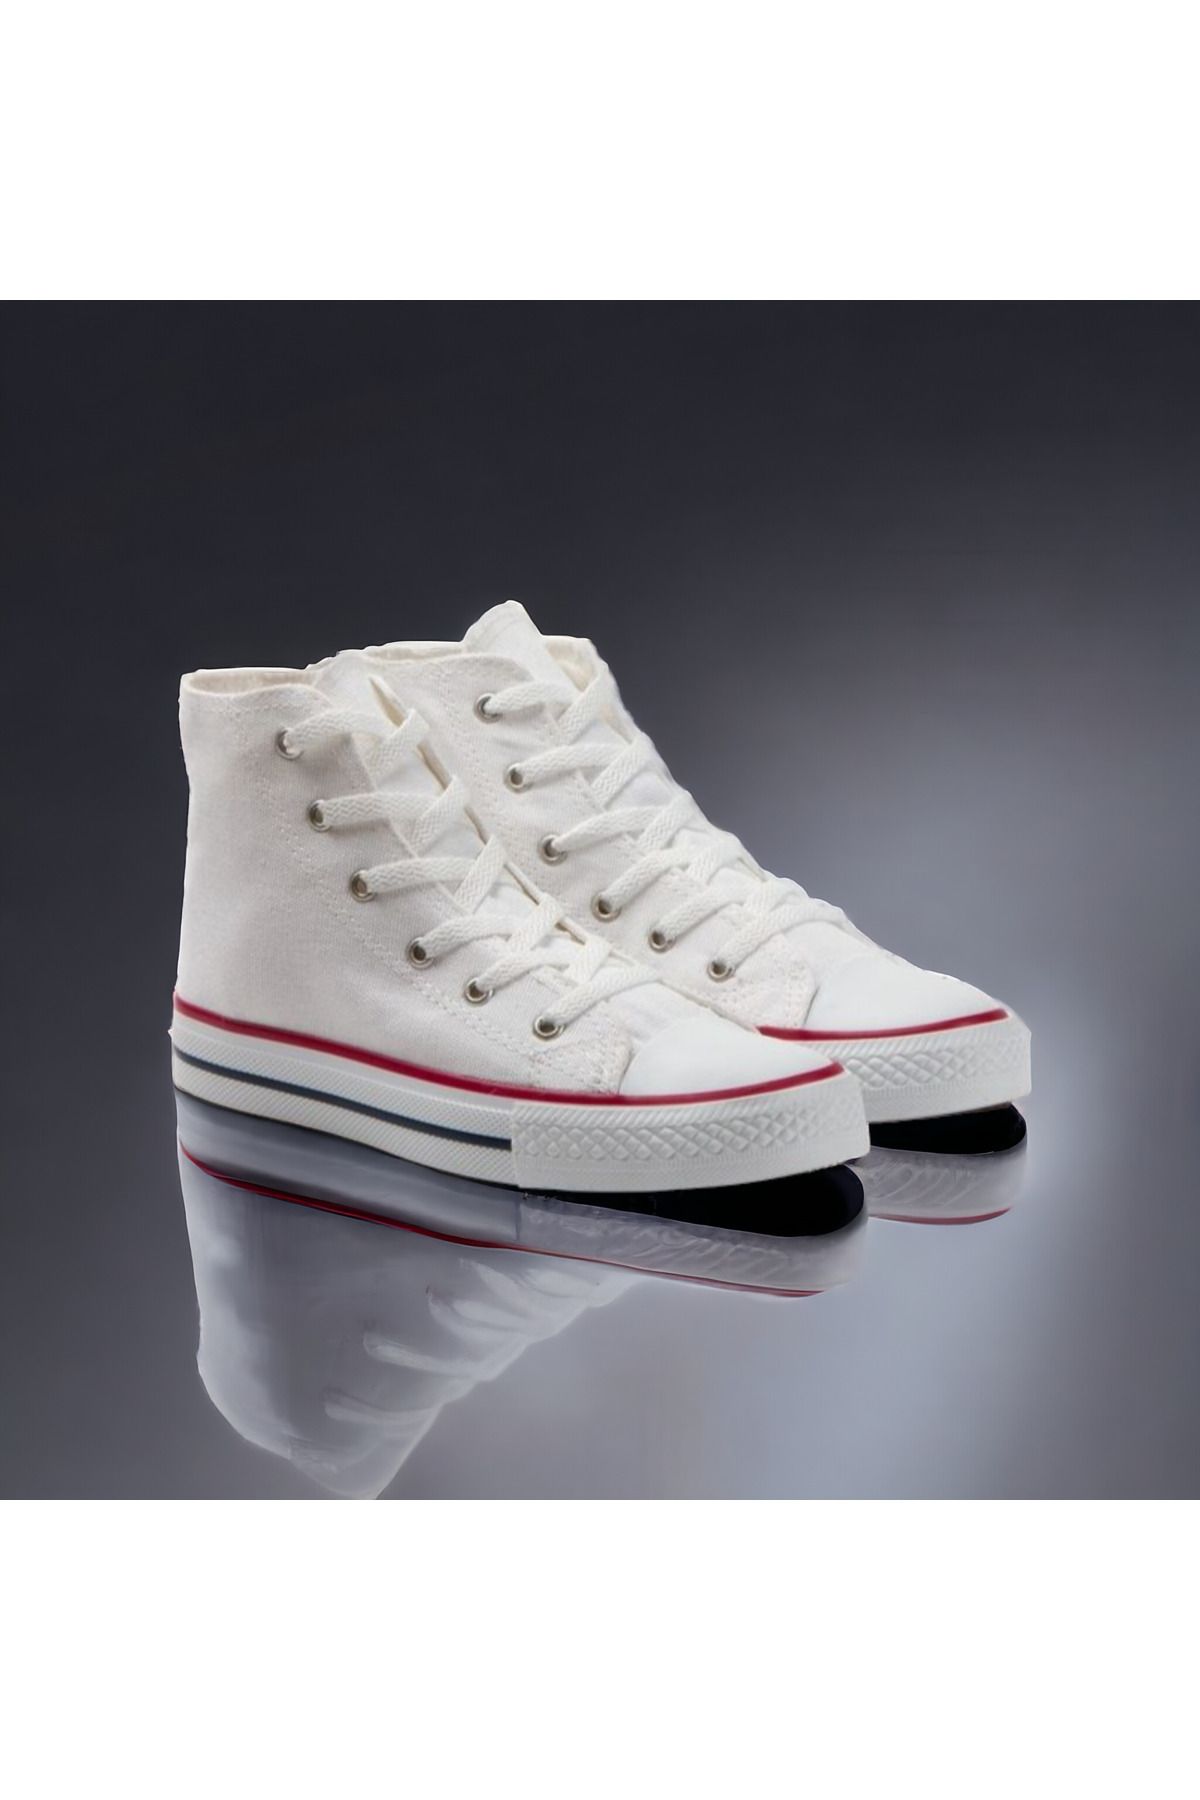 PATİK BEBE Unisex Çocuk Beyaz Boğazlı Sneaker Ayakkabı